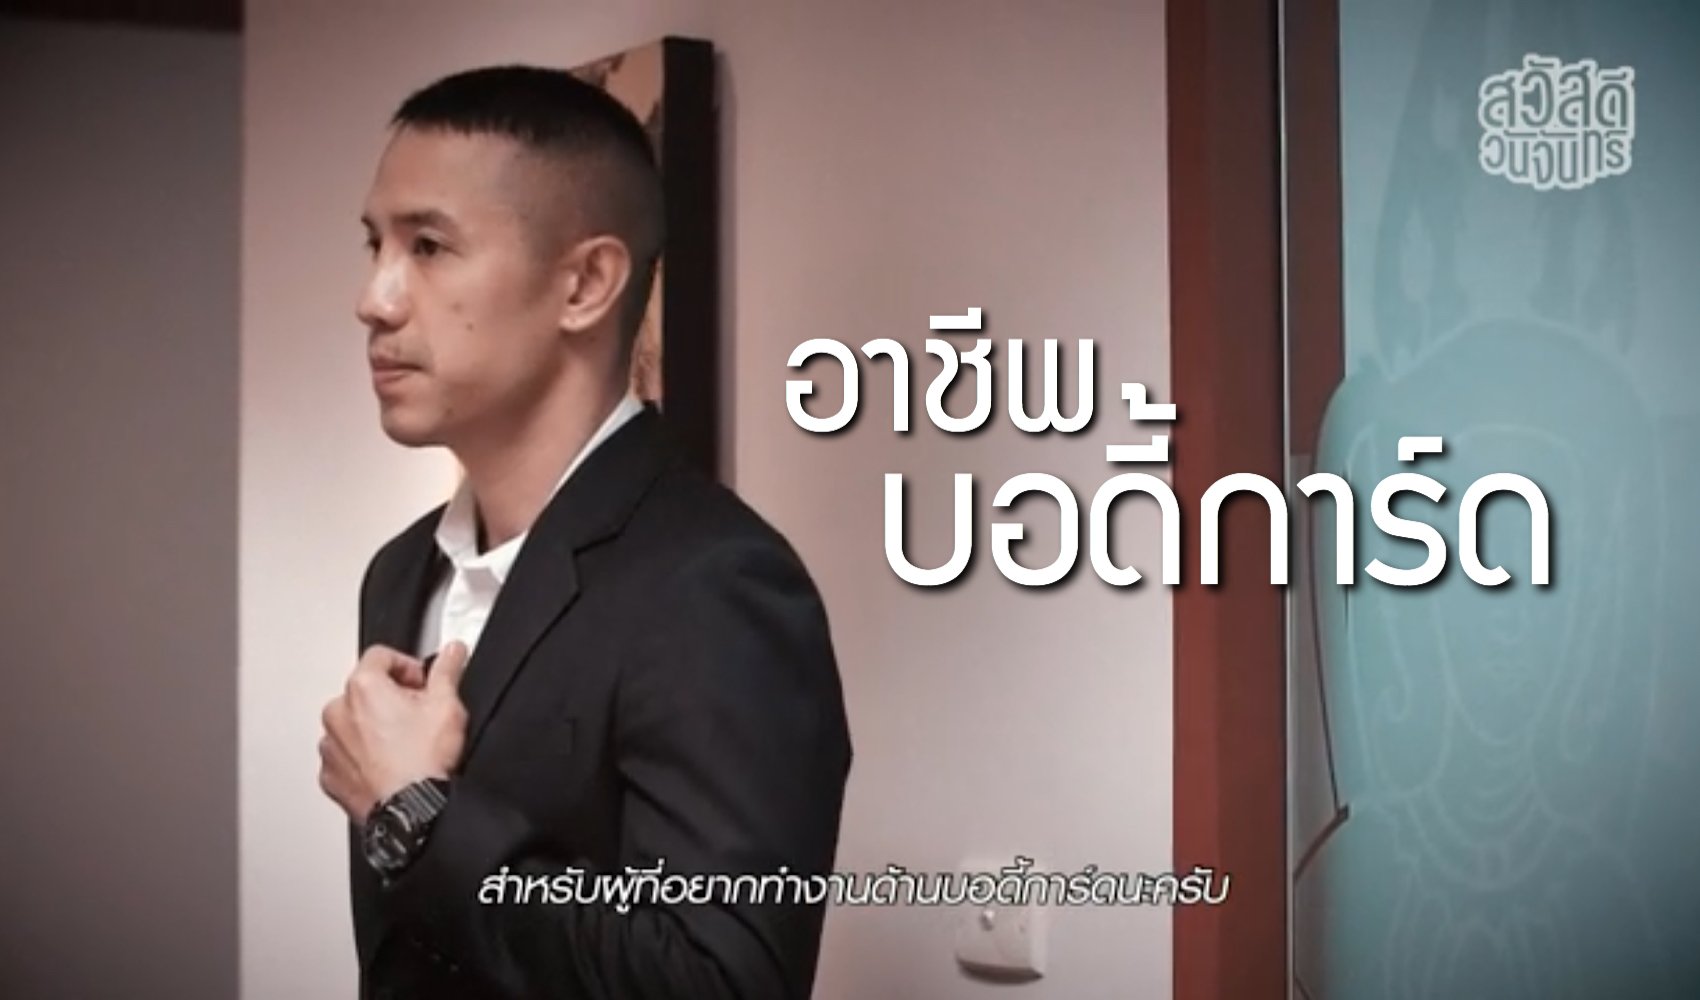 อาชีพบอดี้การ์ด BODYGUARD VIP THAILAND ให้สัมภาษณ์รายการ สวัสดีวันจันทร์ EP 3